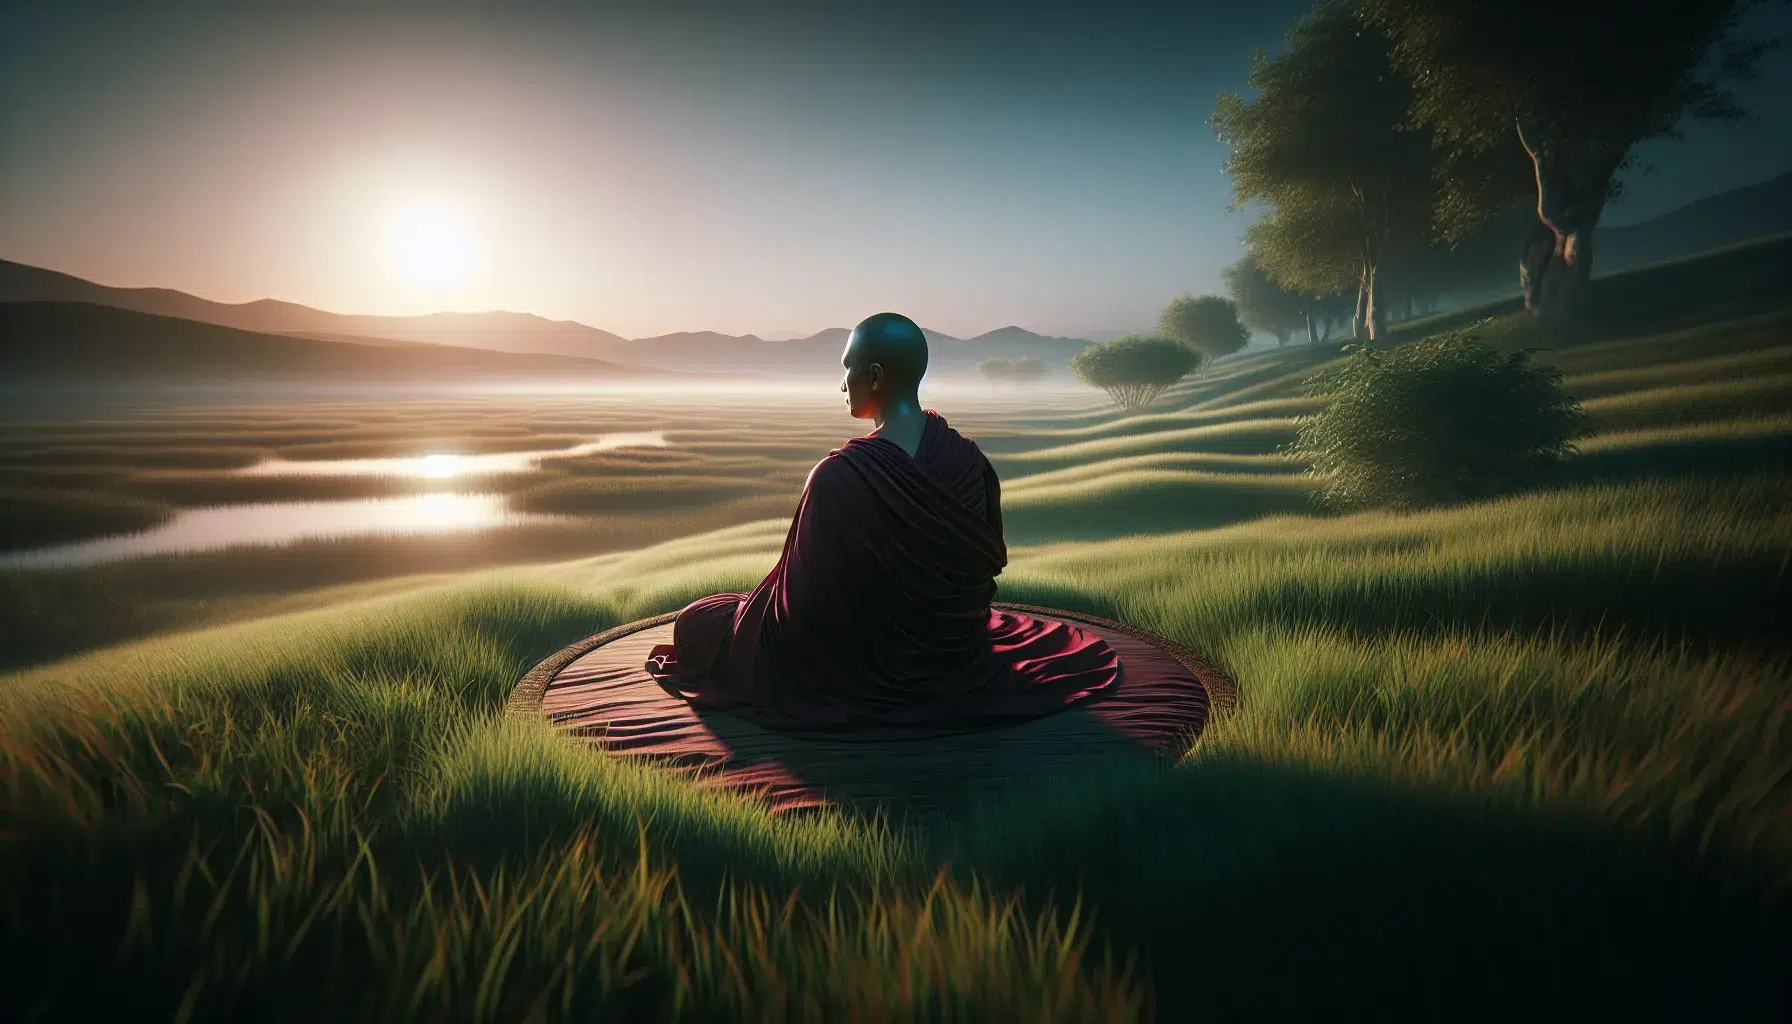 'Ilustración representativa de un monje budista meditando en un paisaje tranquilo y sereno'.